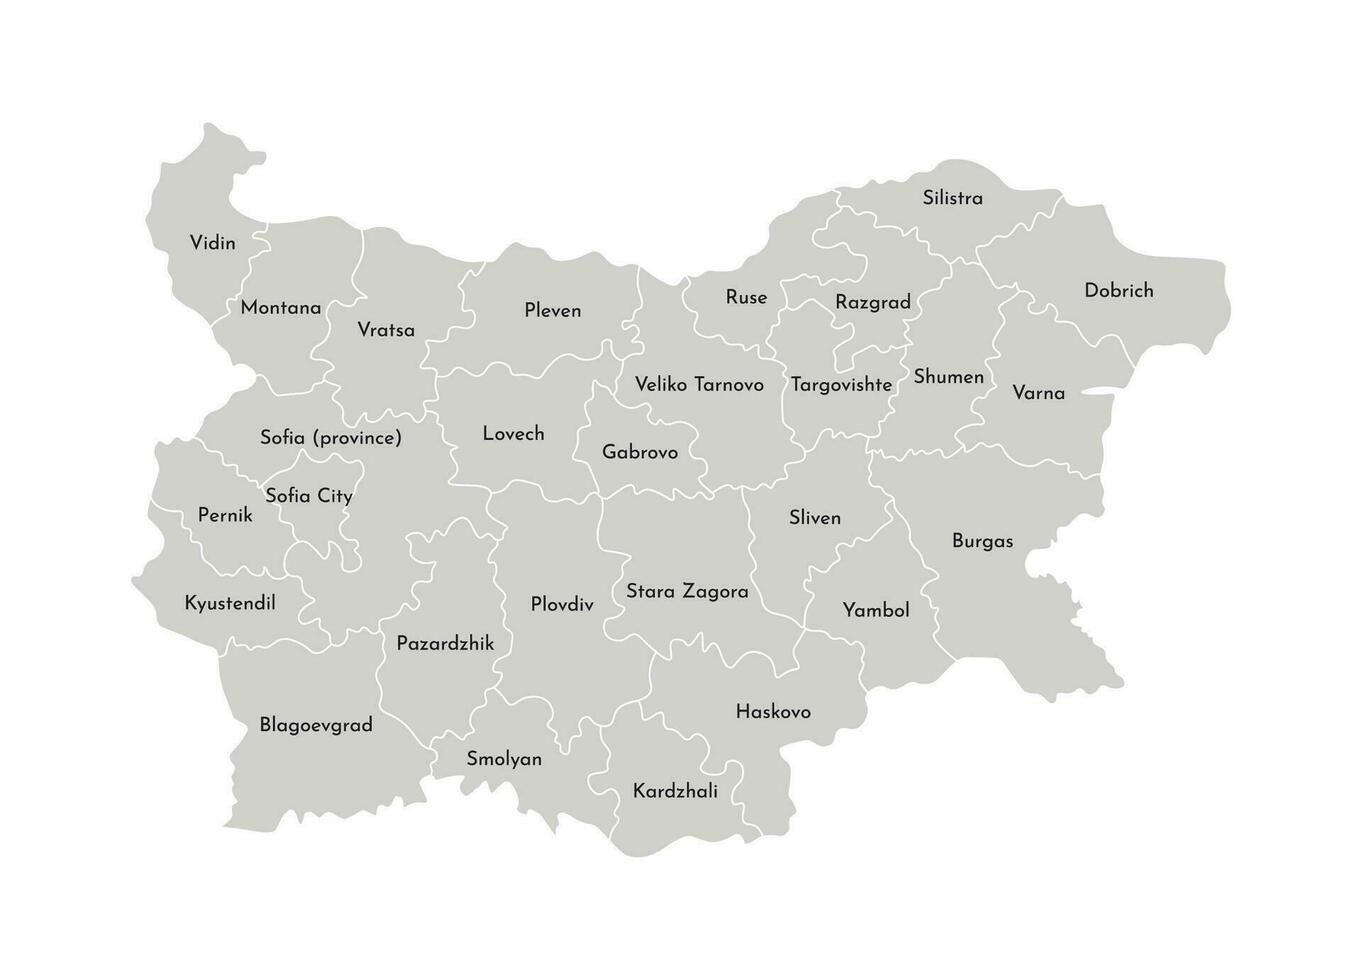 Vektor isoliert Illustration von vereinfacht administrative Karte von Bulgarien. Grenzen und Namen von das Provinzen, Regionen. grau Silhouetten. Weiß Umriss.